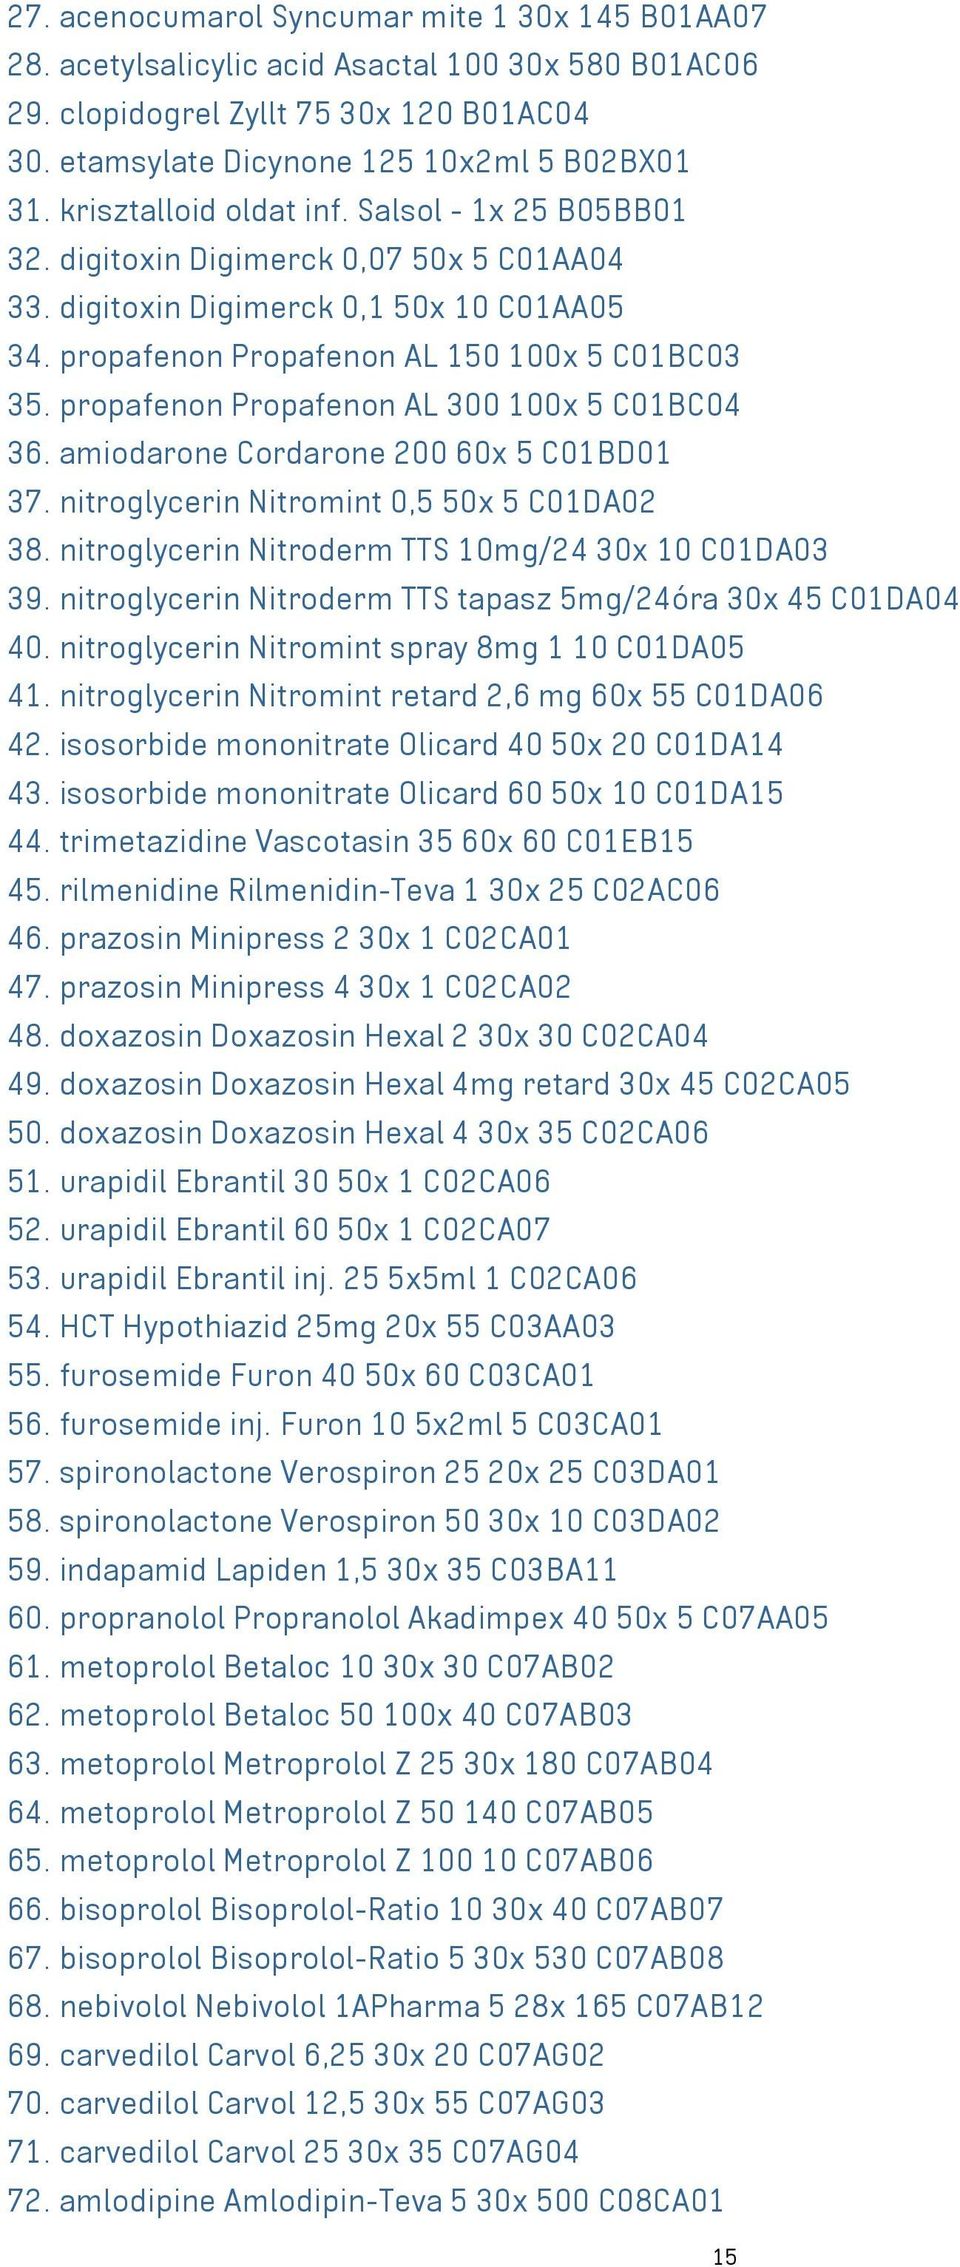 propafenon Propafenon AL 300 100x 5 C01BC04 36. amiodarone Cordarone 200 60x 5 C01BD01 37. nitroglycerin Nitromint 0,5 50x 5 C01DA02 38. nitroglycerin Nitroderm TTS 10mg/24 30x 10 C01DA03 39.